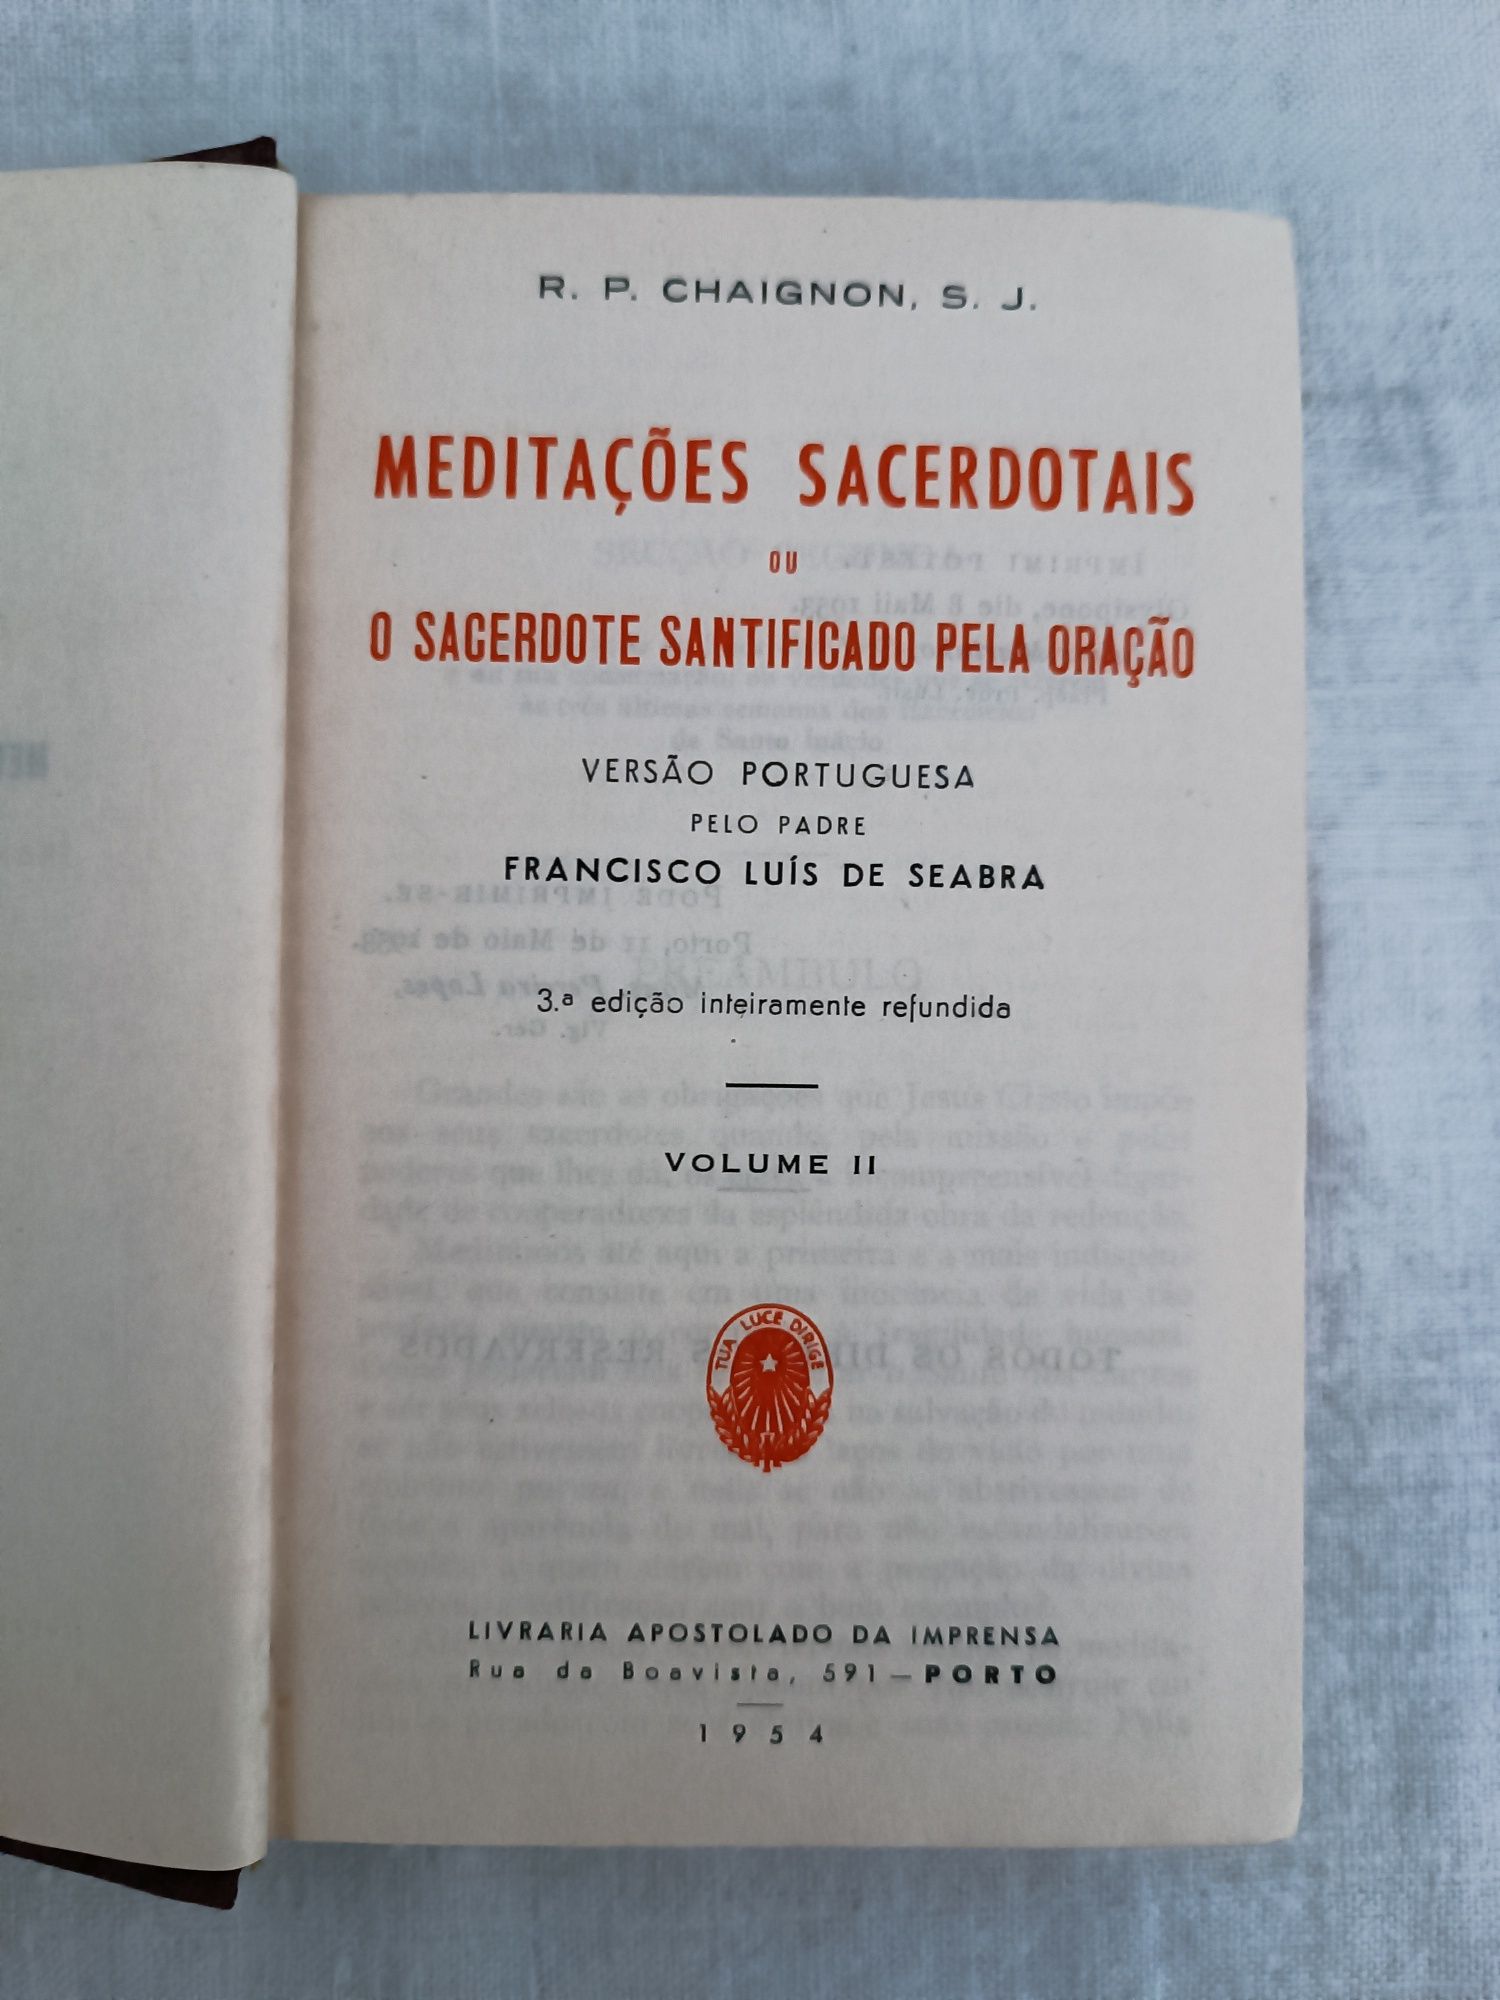 Livro "Meditações Sacerdotais - Volume II"